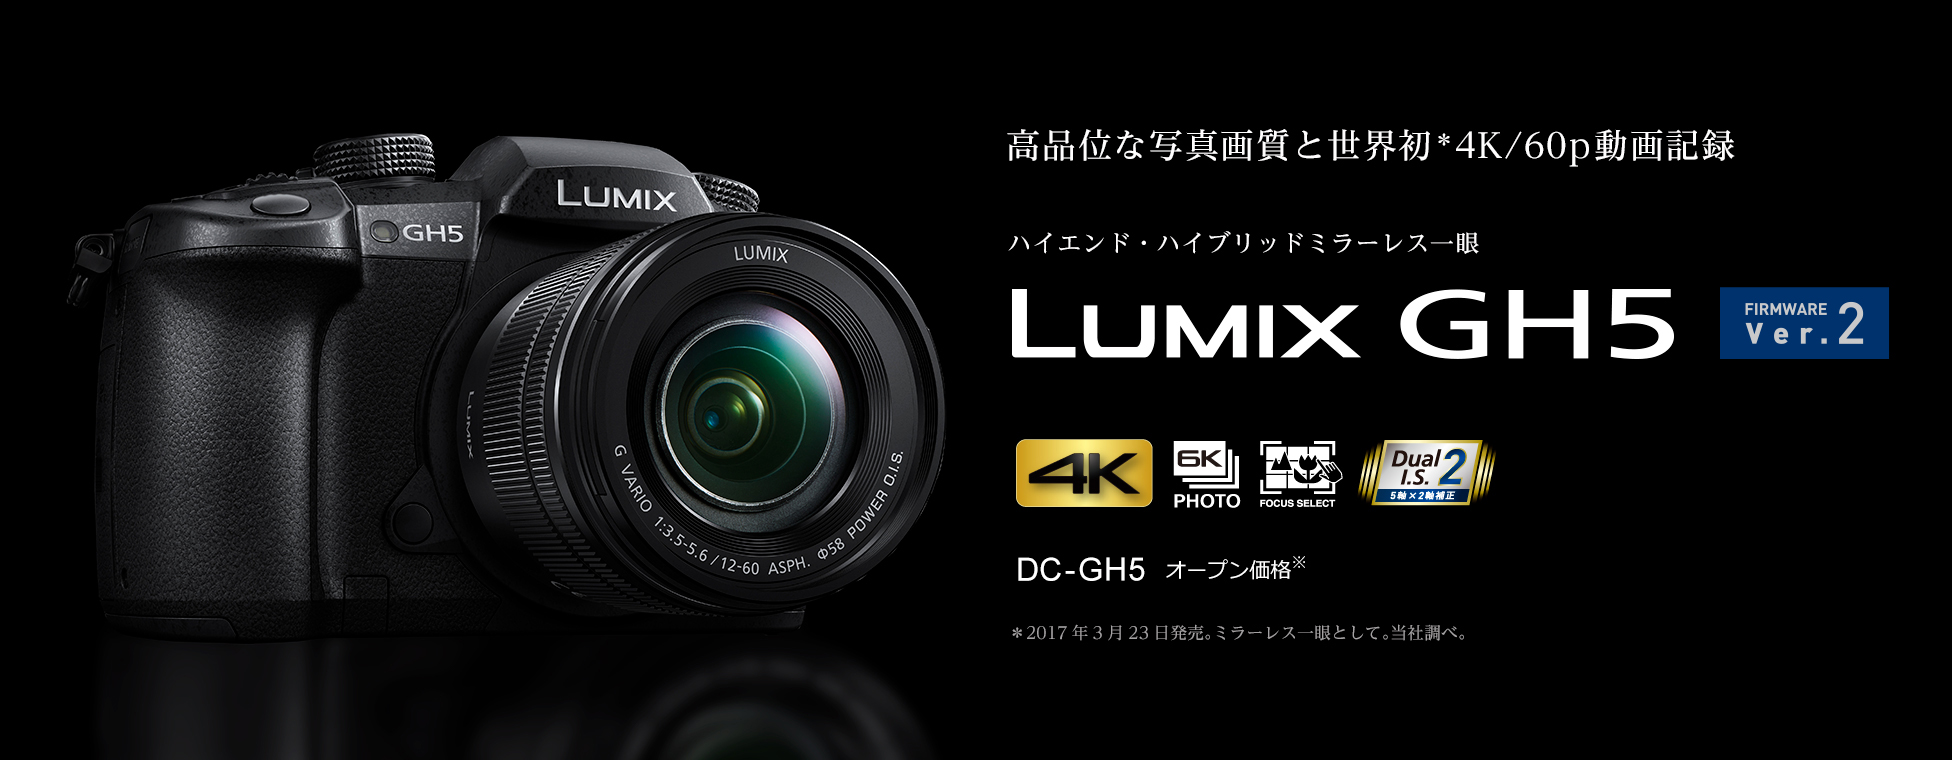 高品位な写真画像と世界初*4K/60p動画記録 ハイエンド・ハイブリッドミラーレス一眼 LUMIX GH5 DC-GH5オープン価格